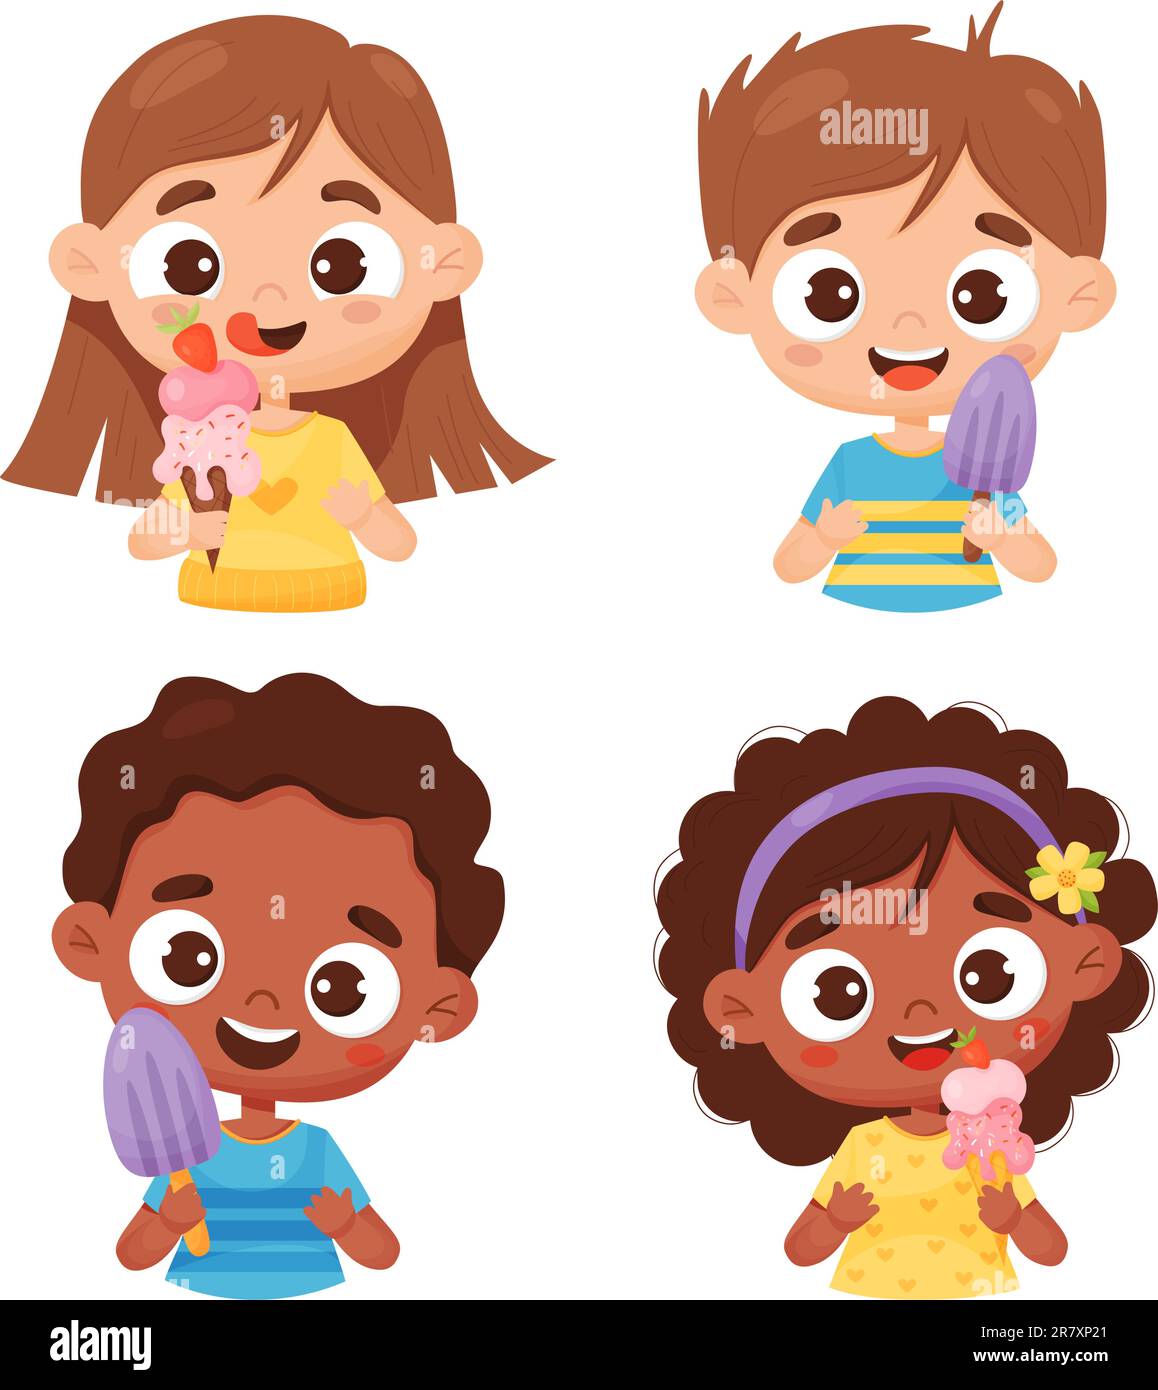 Kollektion glückliche Kinder mit Eis. Süße Mädchen und Jungen. Vektordarstellung im Cartoon-Stil. Isolierte lustige, lächelnde Figuren auf Weiß Stock Vektor